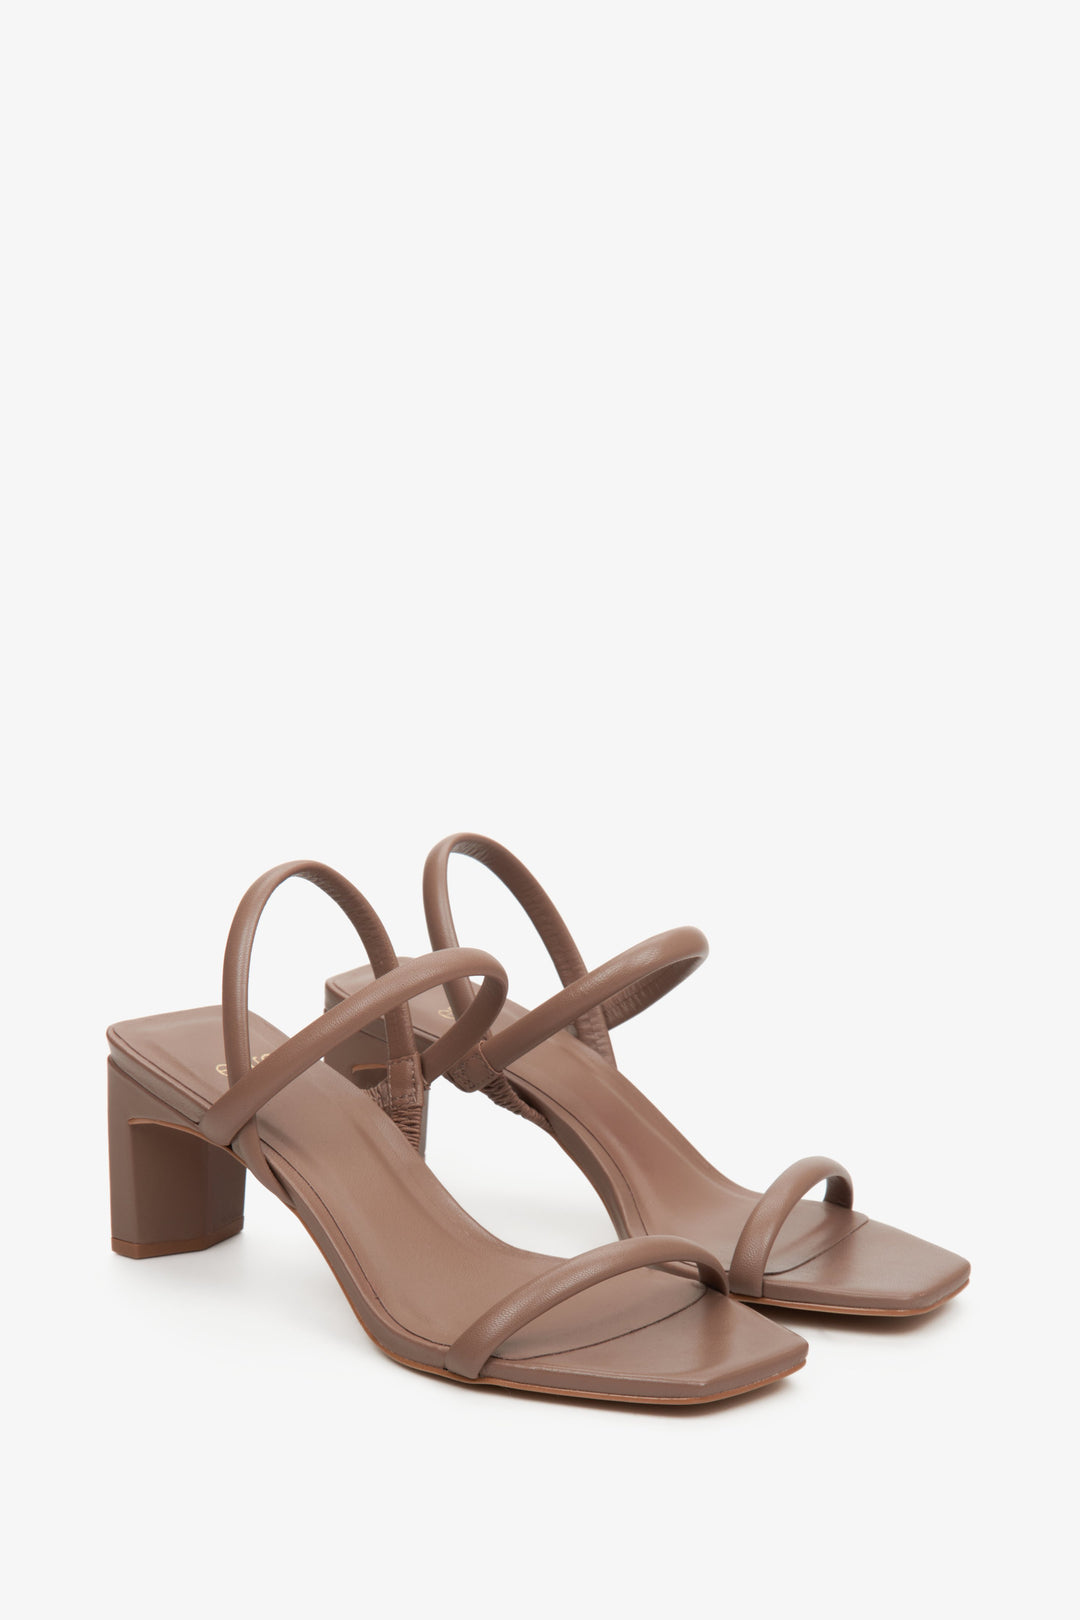 Wygodne, skórzane sandały damskie na słupku marki Estro w kolorze brązowym.